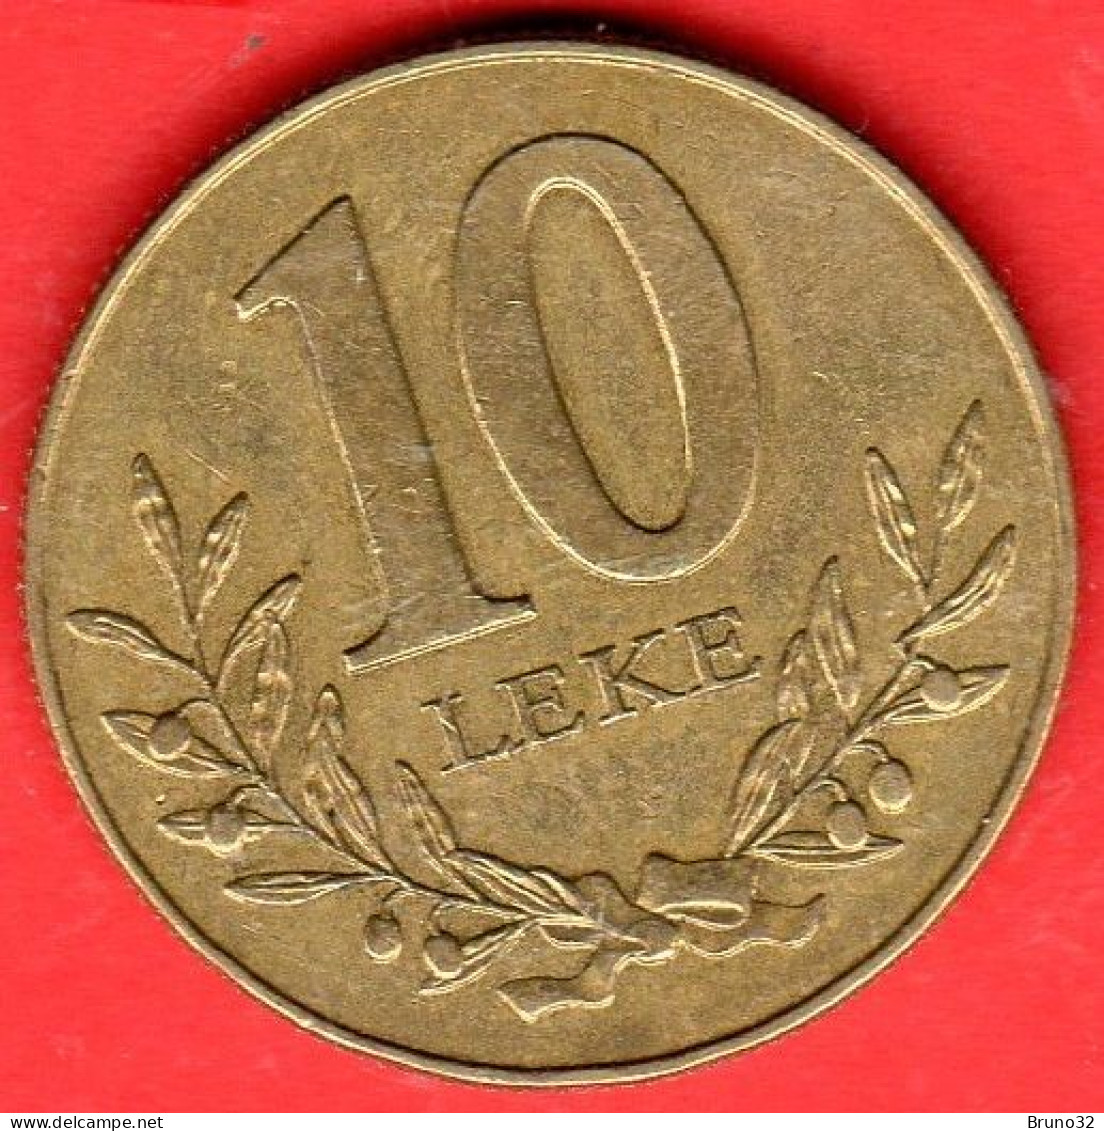 Albania - Albanie - Shqipëria - 1996 - 10 Leke - SPL/XF - Come Da Foto - Albanie